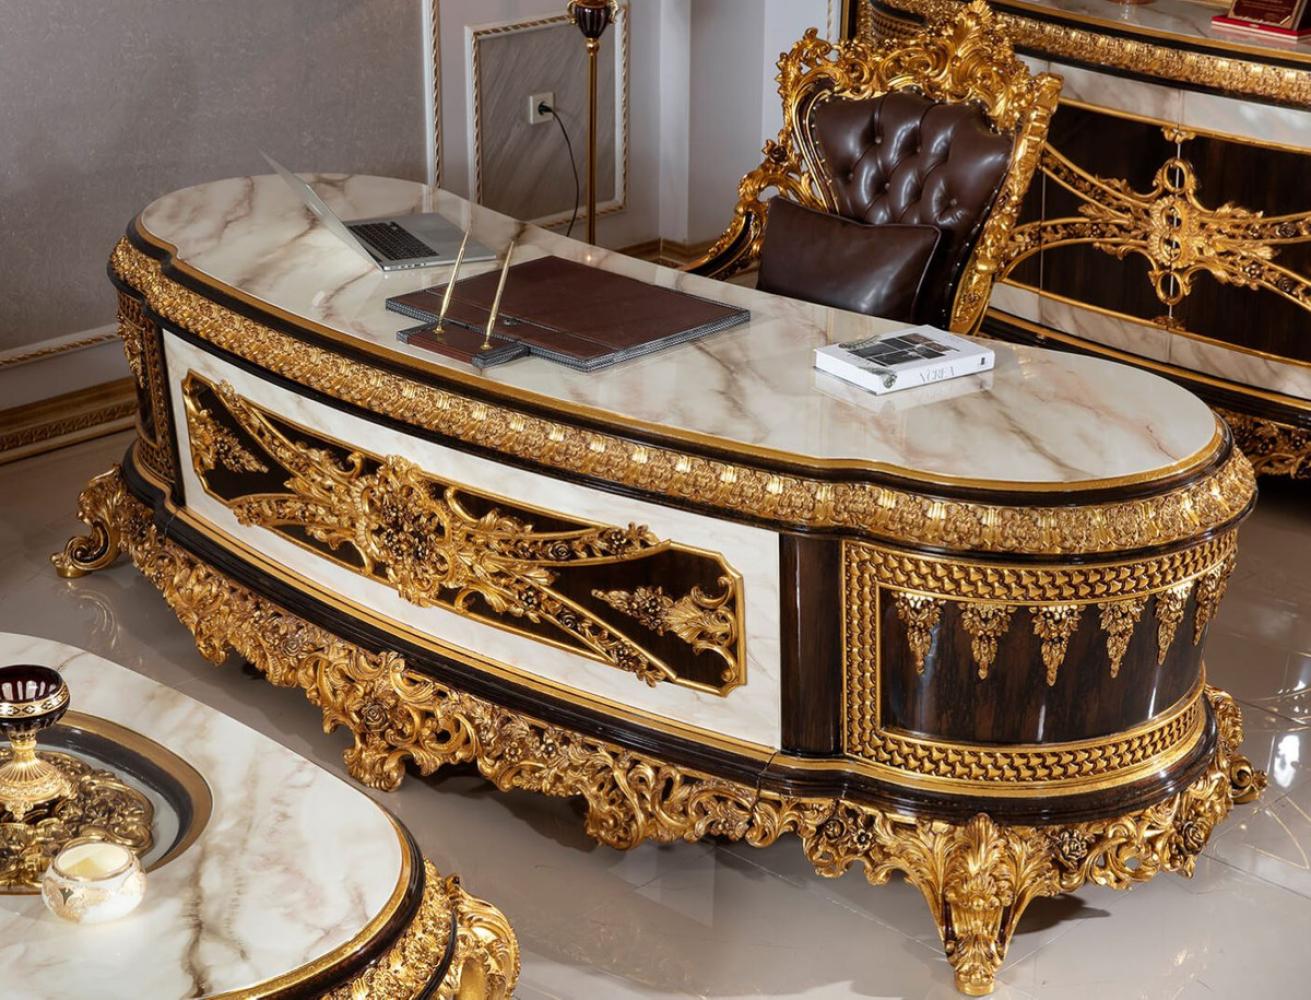 Casa Padrino Luxus Barock Büromöbel Set Weiß / Dunkelbraun / Gold - 1 Barock Schreibtisch mit Marmoroptik & 1 Barock Bürostuhl mit edlem Kunstleder - Prunkvolle Barock Büromöbel Bild 1